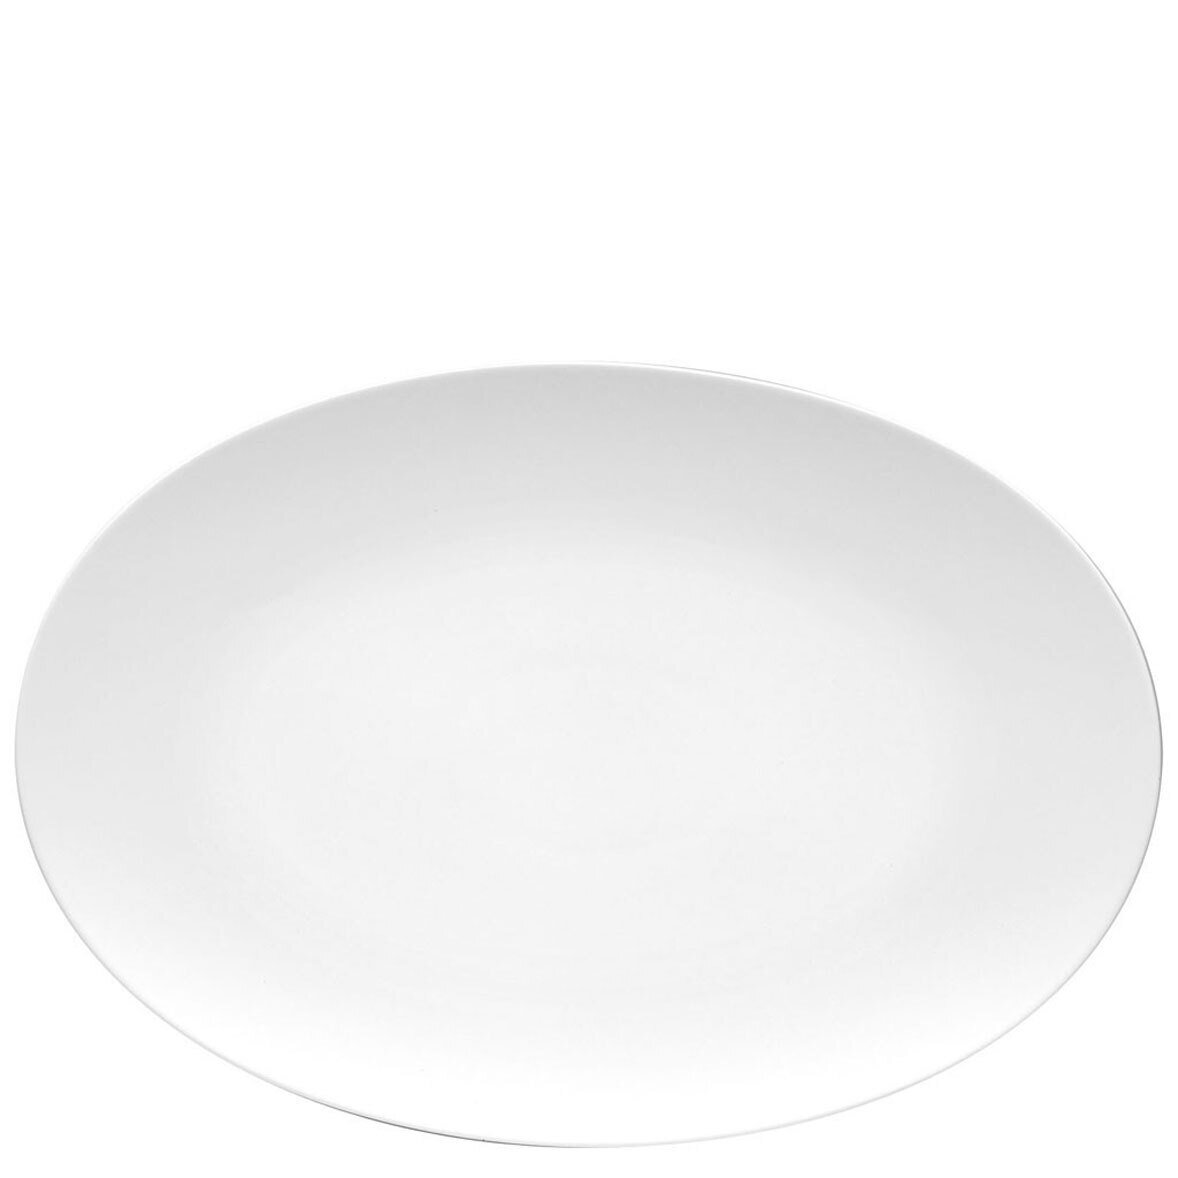 Rosenthal TAC 02 White Platter 15 Inch